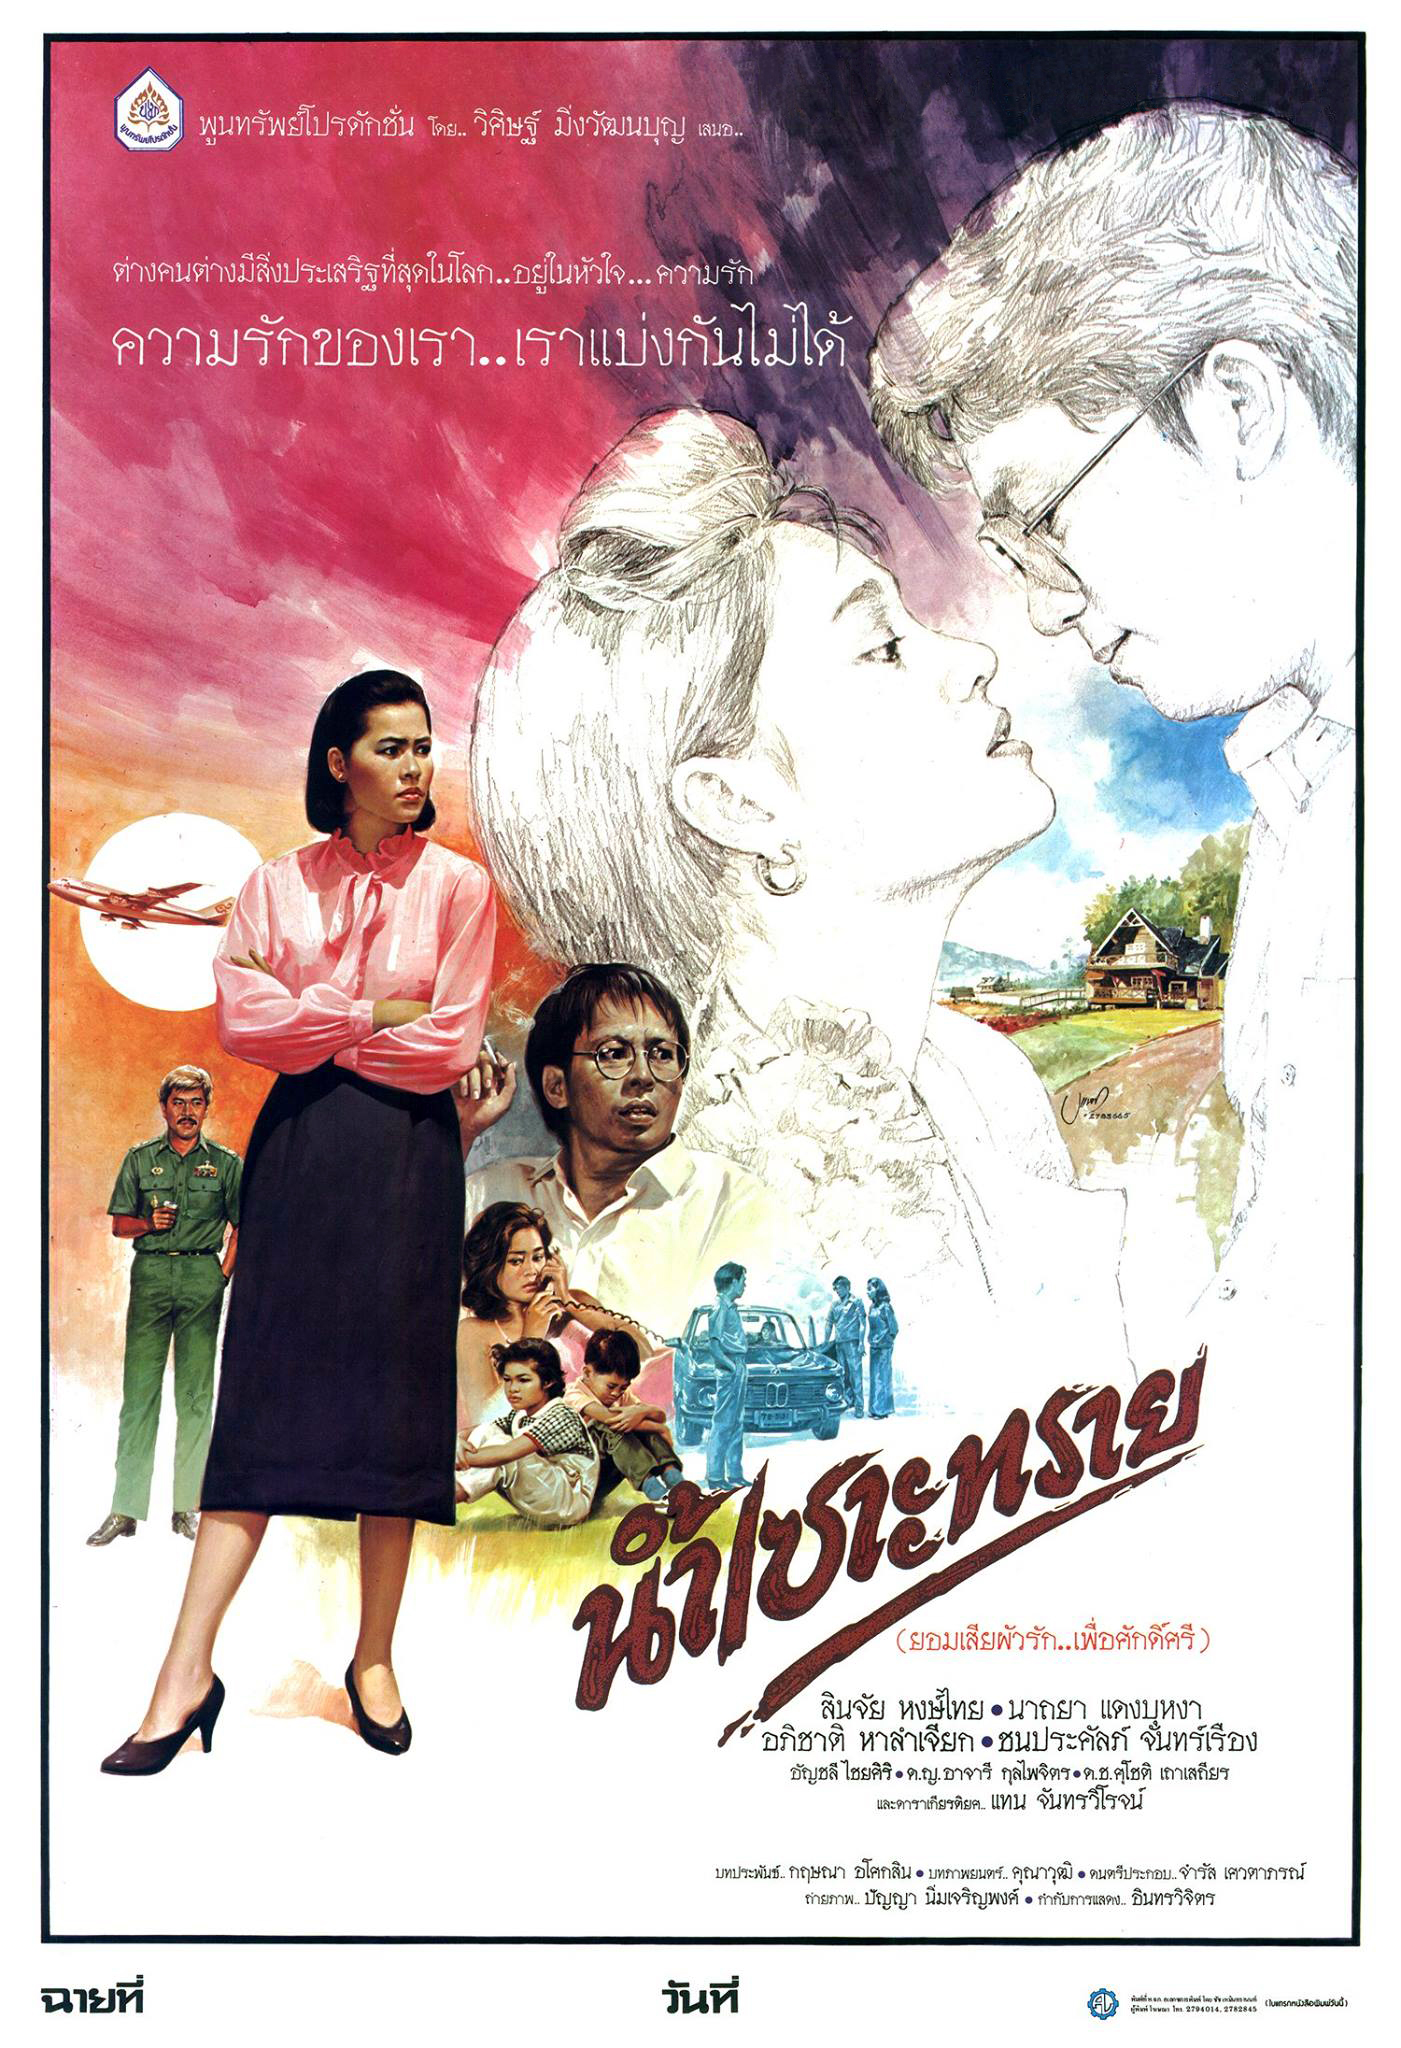 ดูหนังออนไลน์ฟรี Nam Sao Sai (1986) น้ำเซาะทราย (2529)